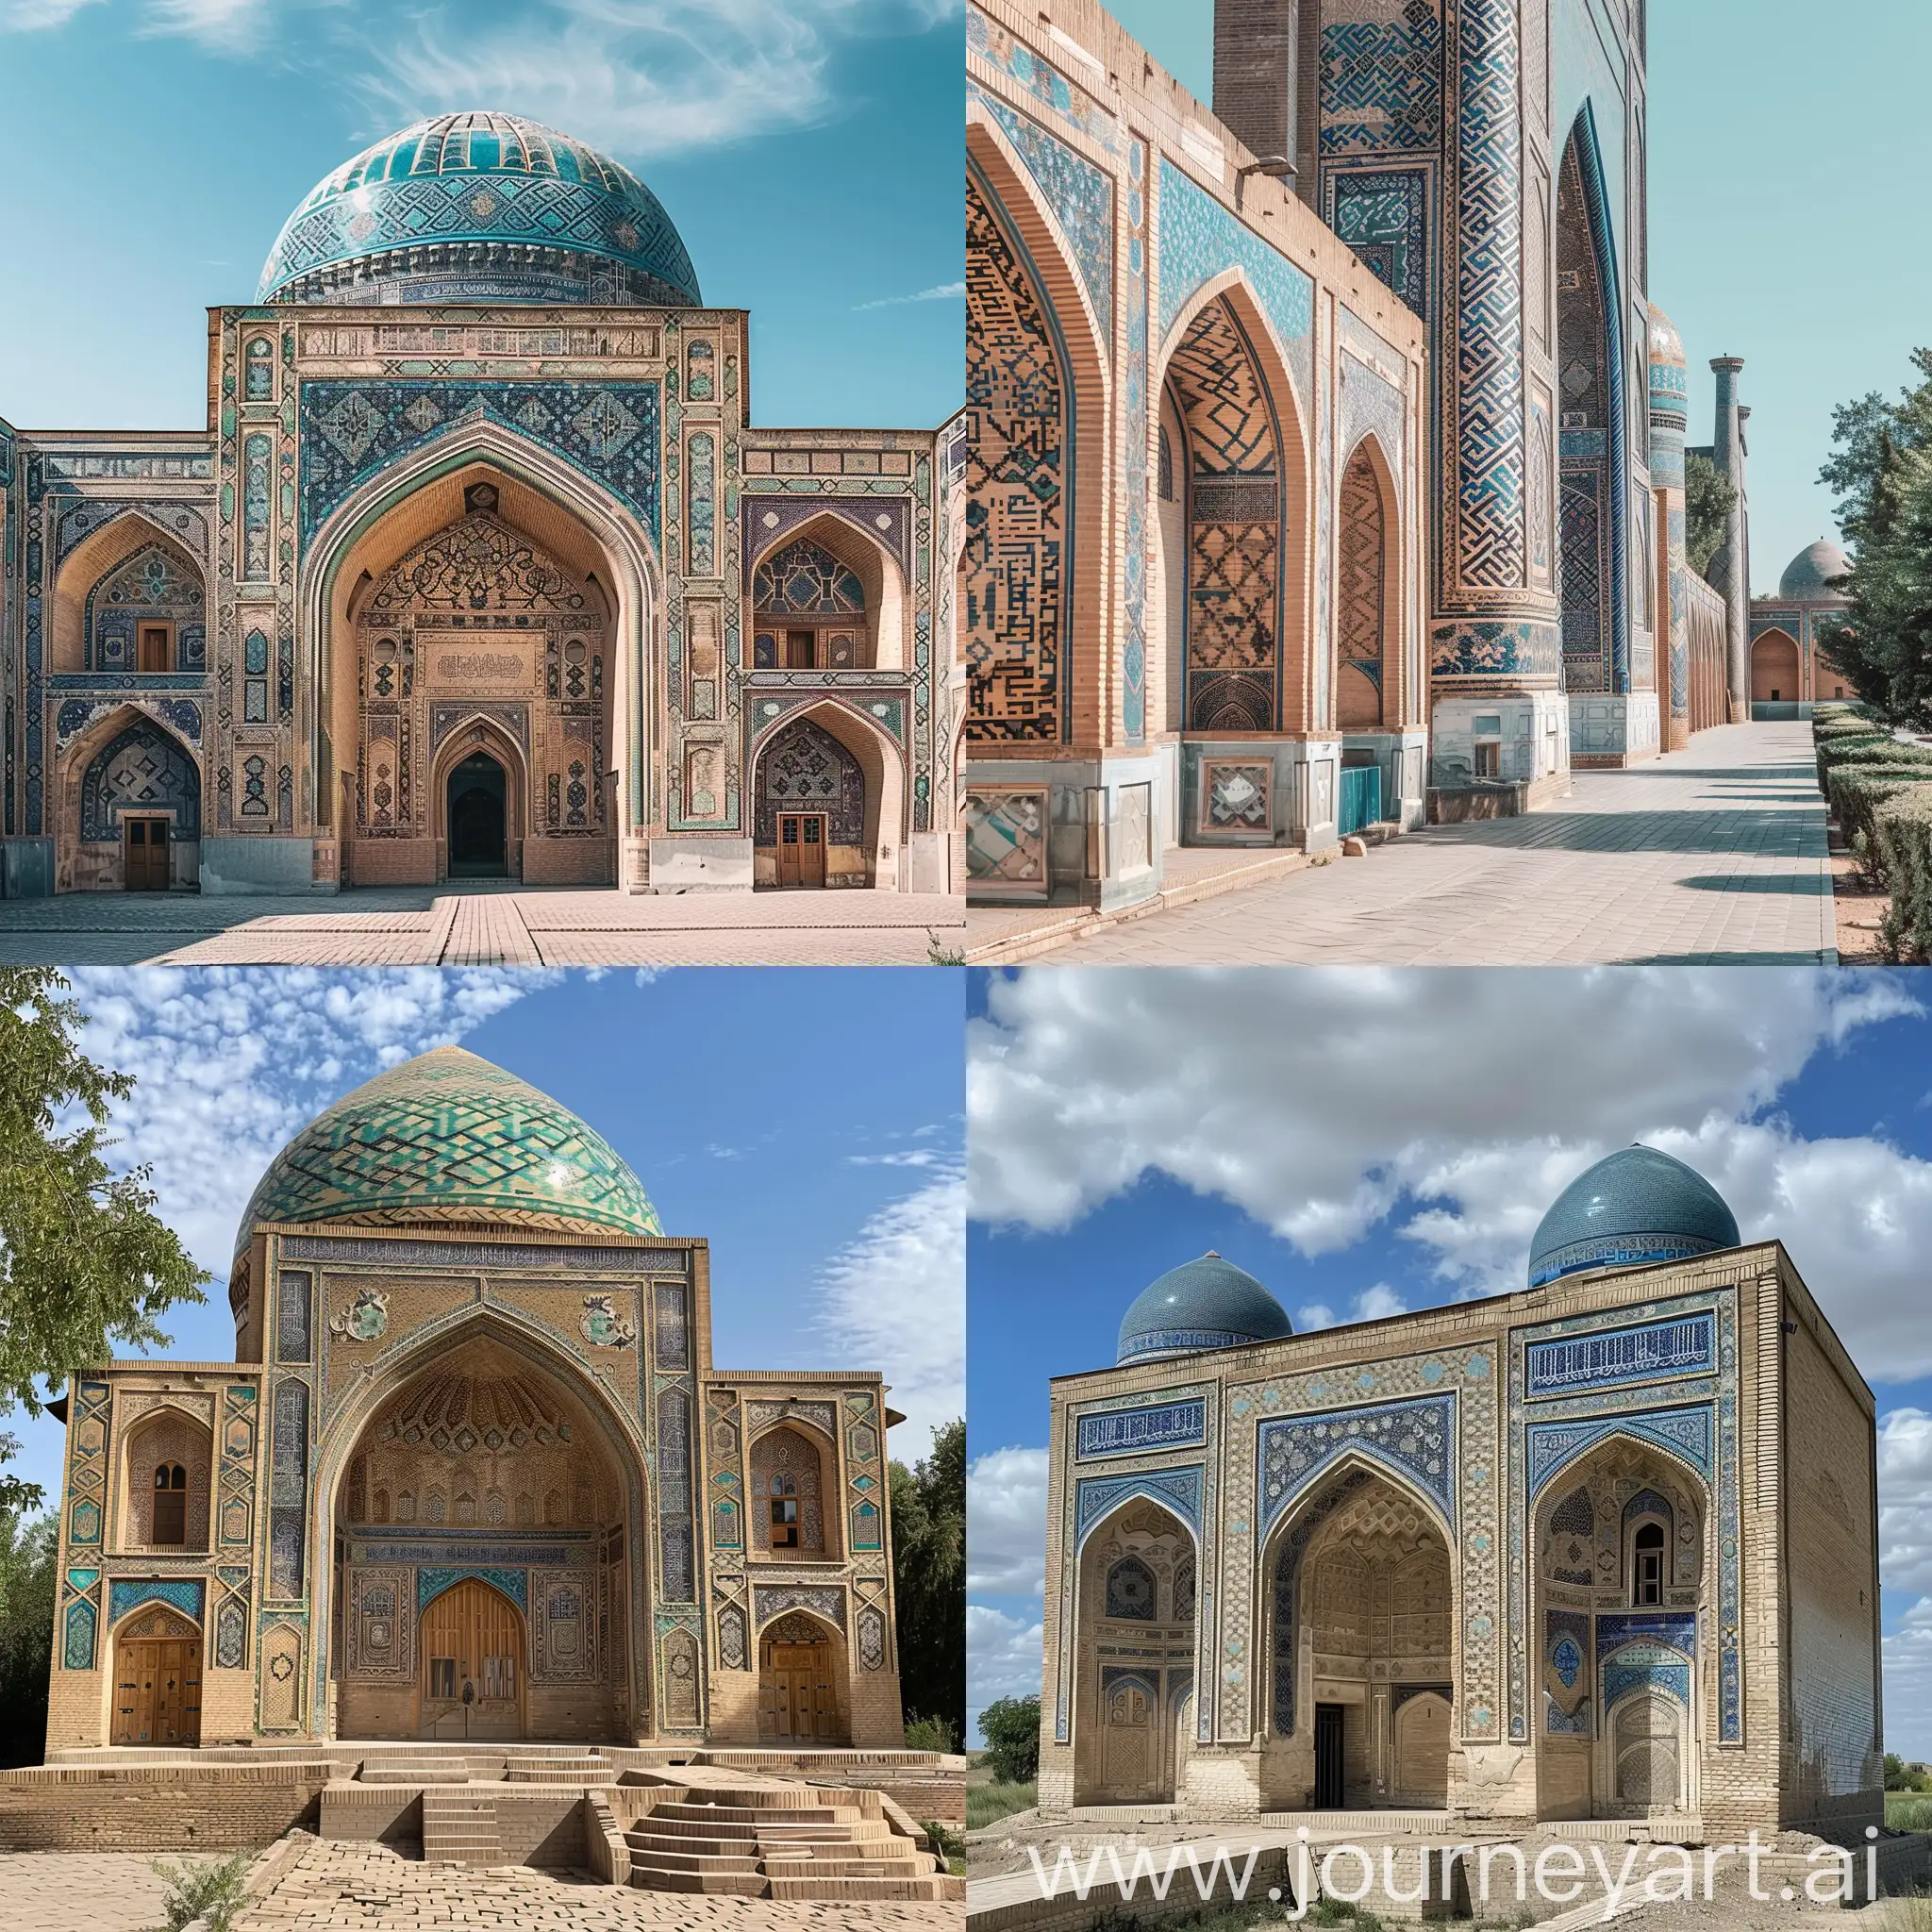 Futuristic-Uzbekistan-Cityscape-in-2050